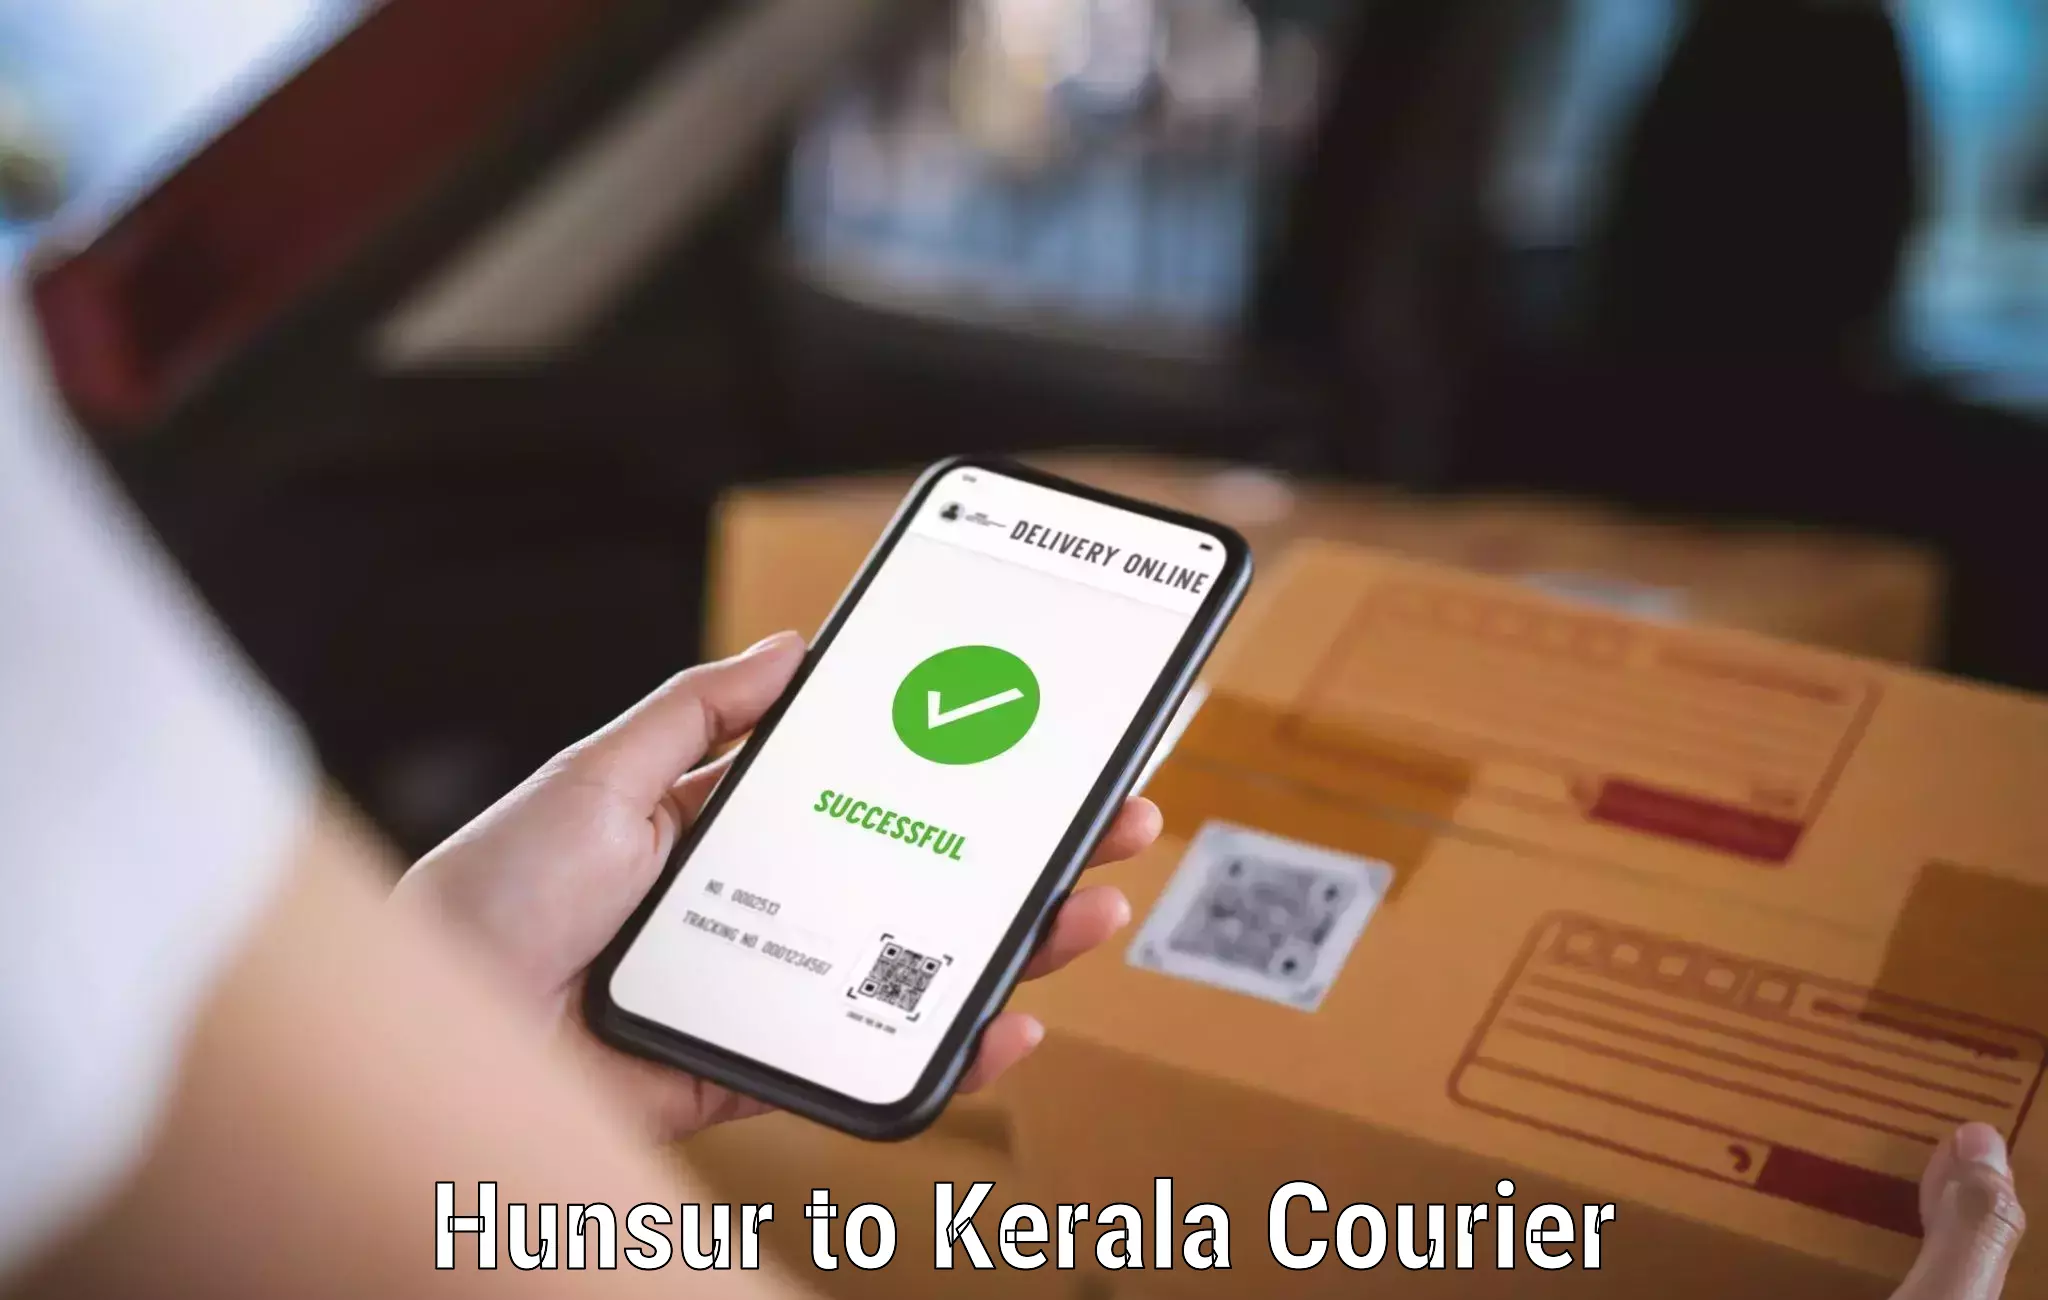 Logistics service provider Hunsur to Kerala